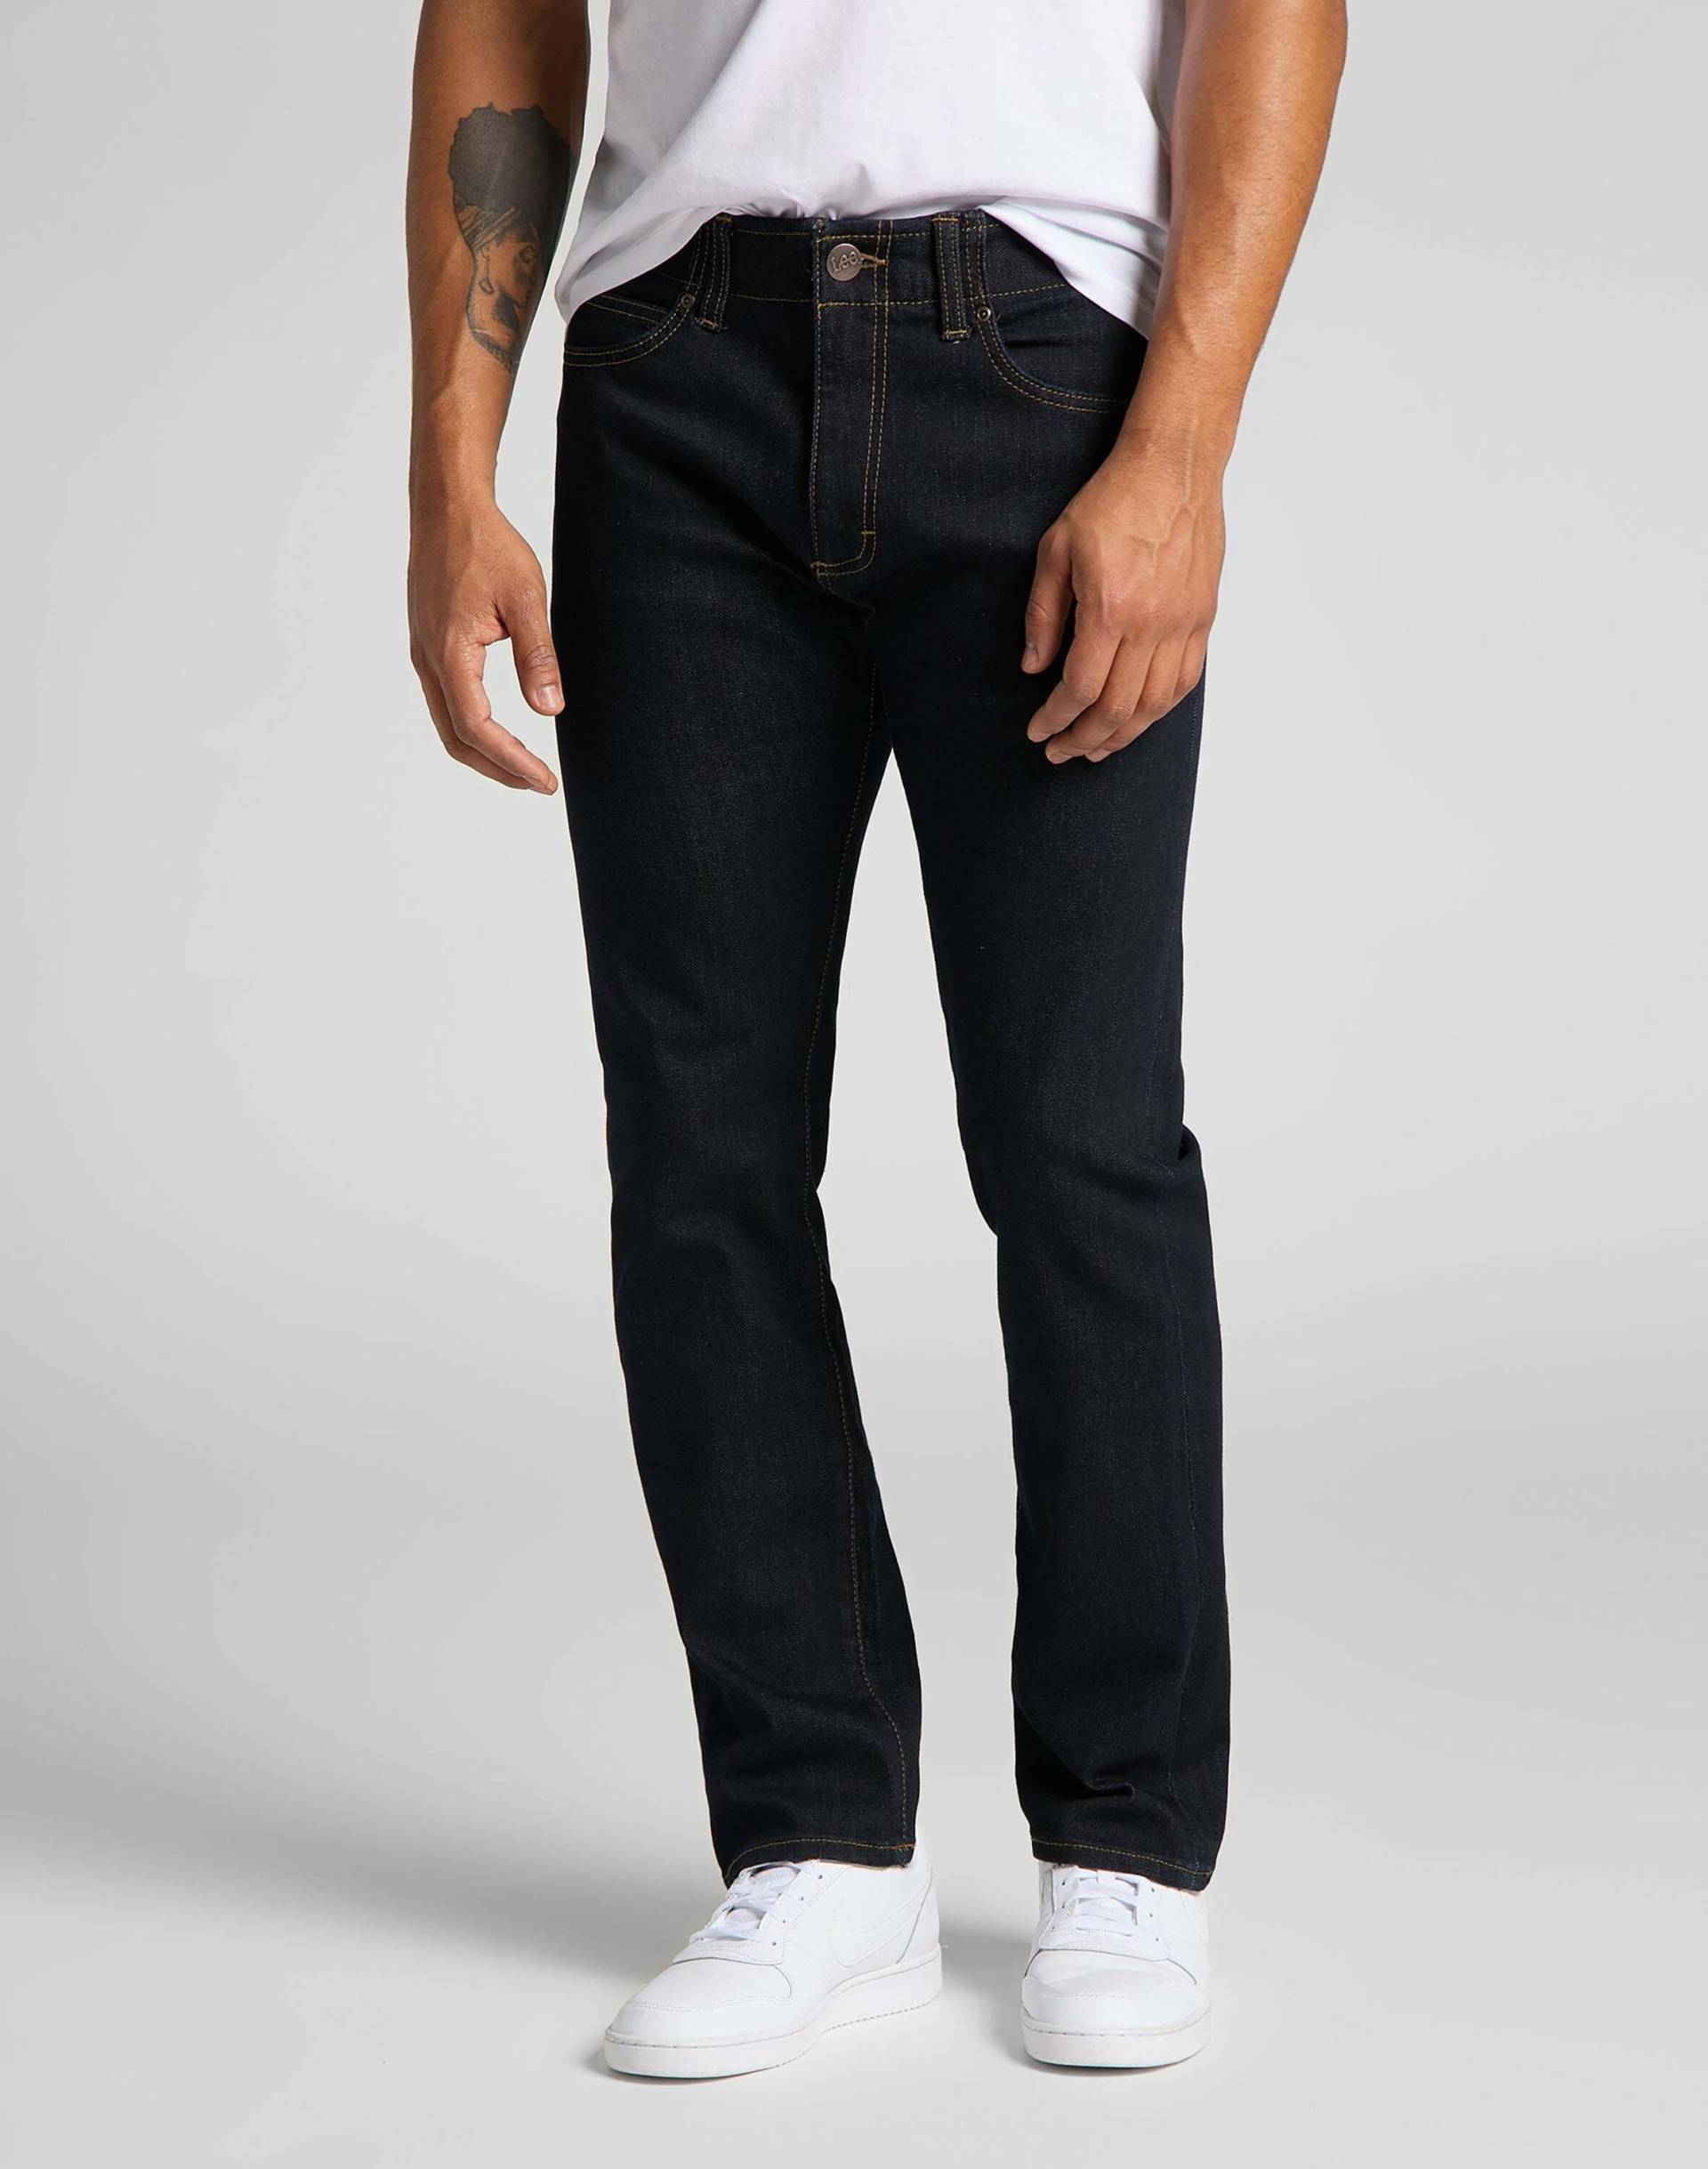 Jeans Slim Fit Mvp Herren Blau L34/W30 von Lee